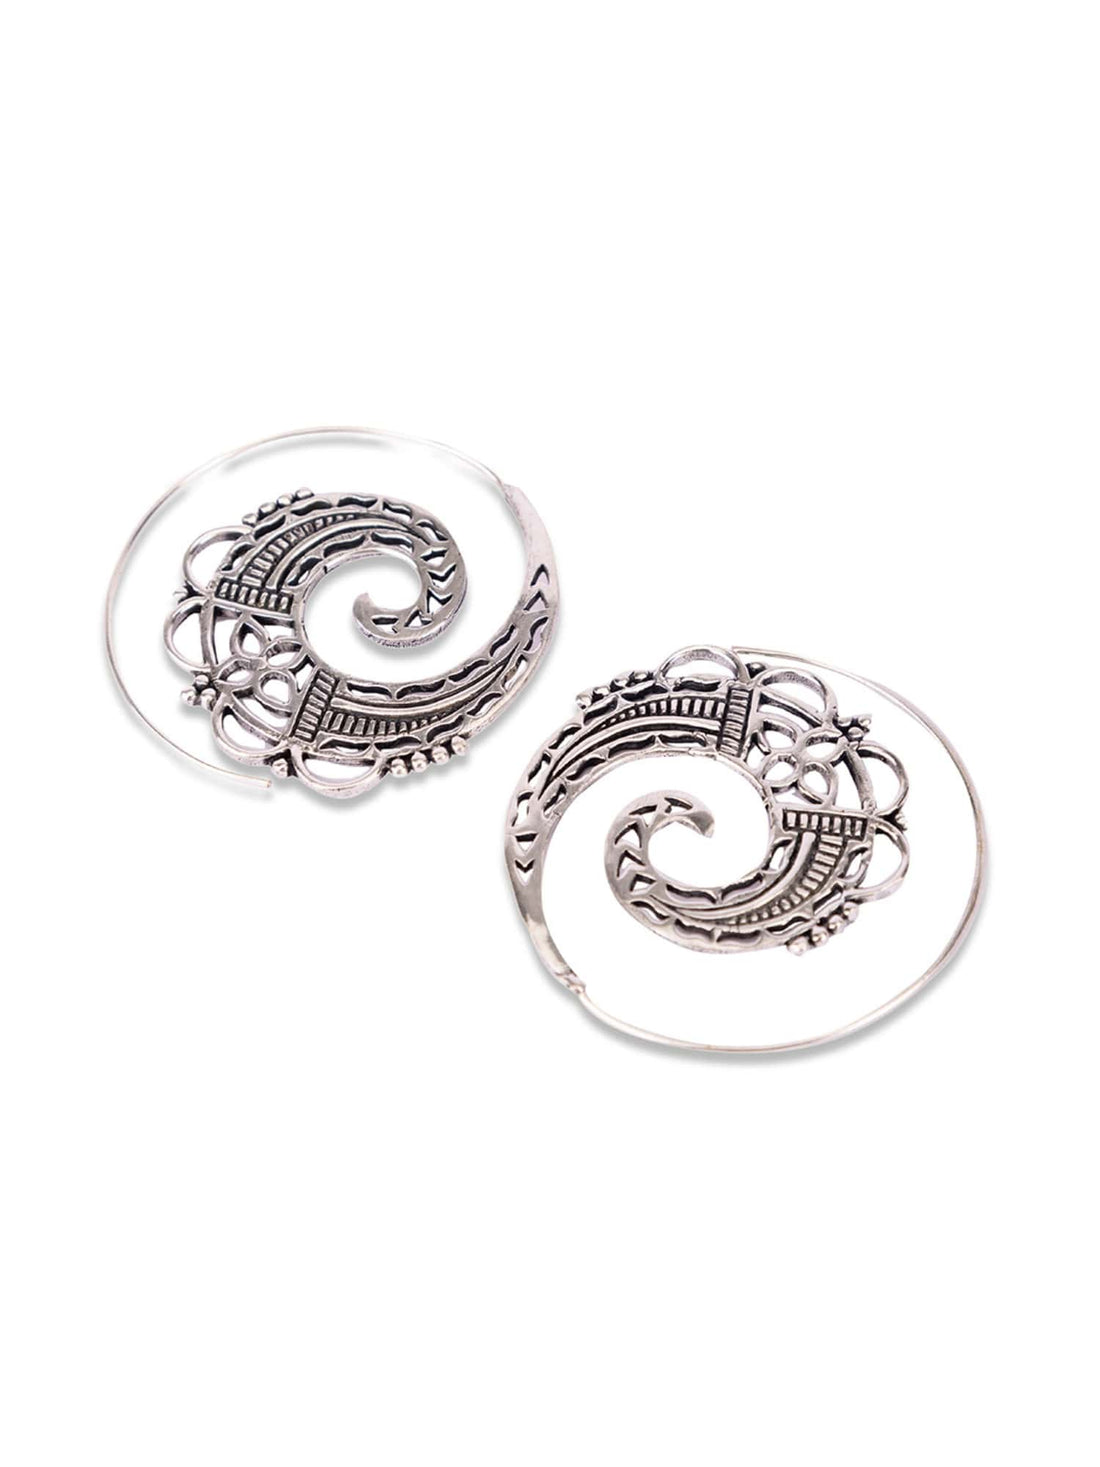 Festive Wear Hoops Earrings - Traditional Silver-Plated Brass Earrings By Studio One Love